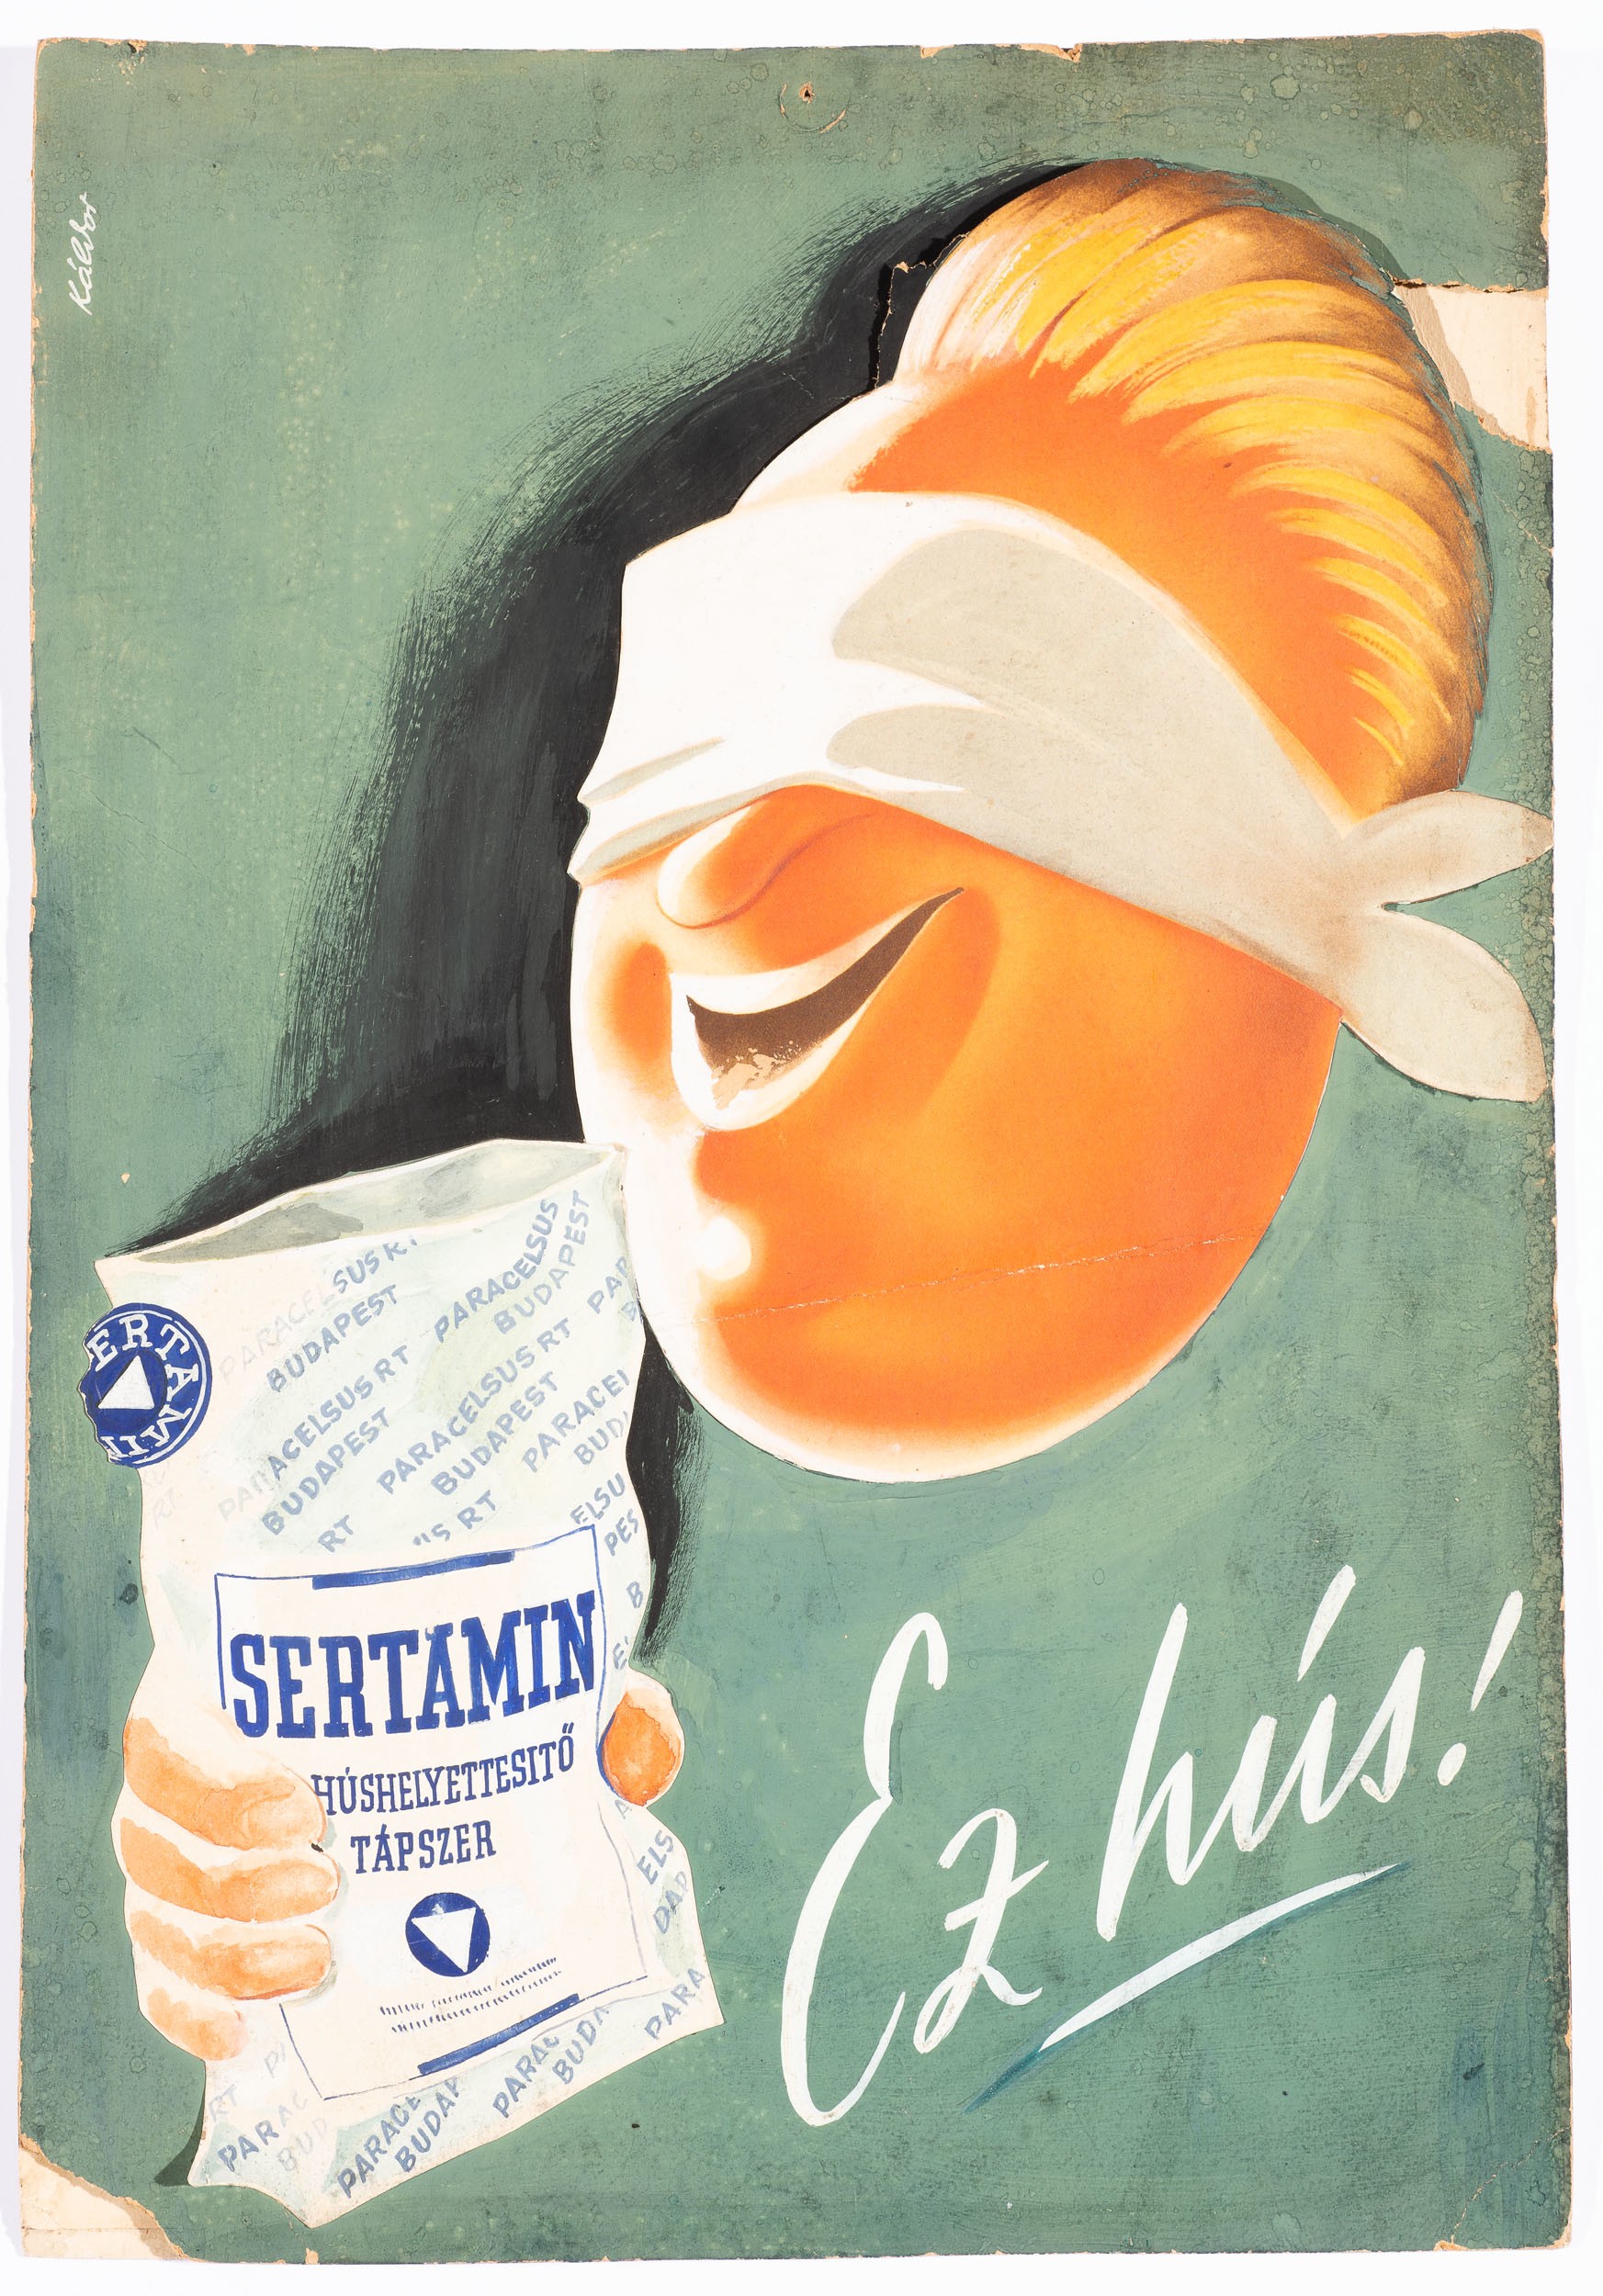 Plakát sertamin húshelyettesitő táp. (Söripari Emléktár - Dreher Sörmúzeum CC BY-NC-SA)